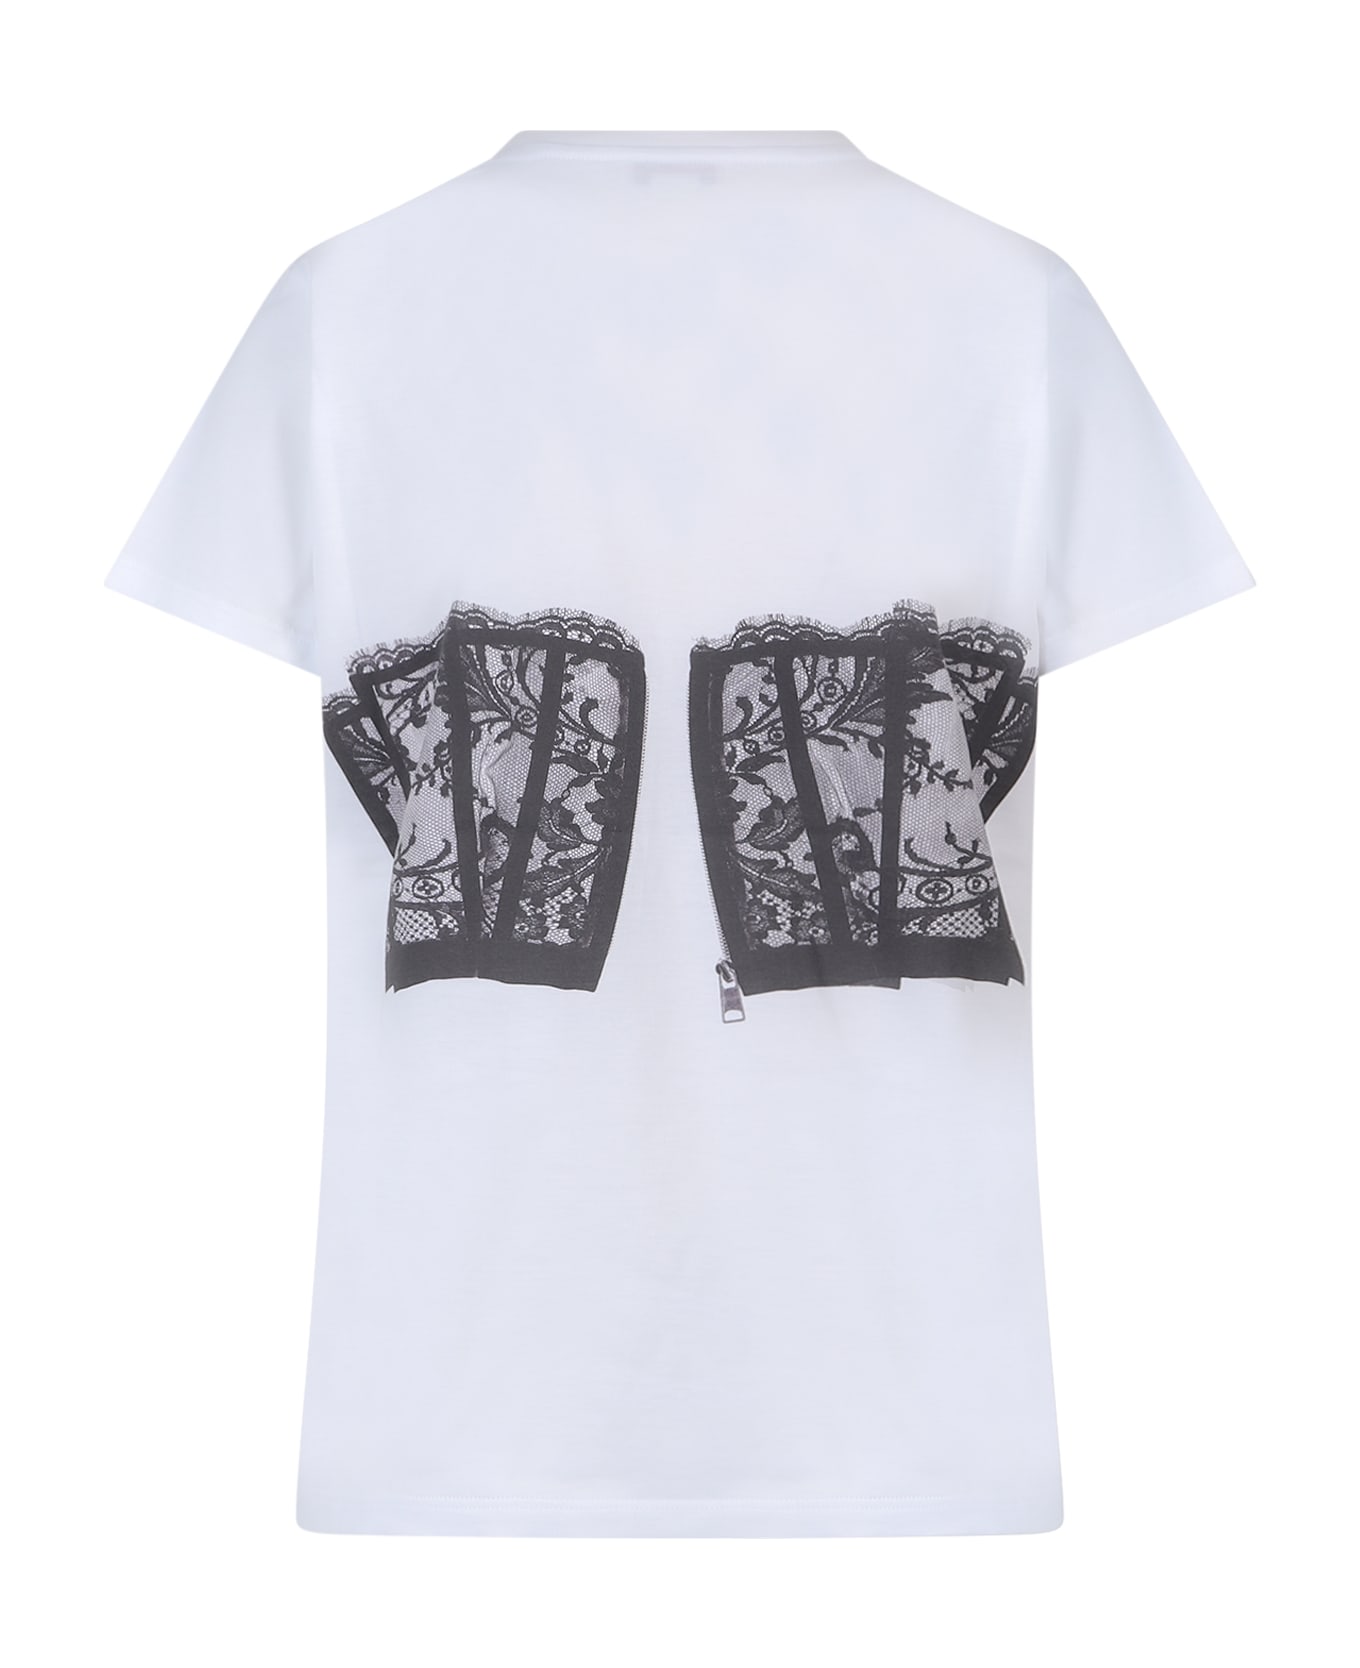 Alexander McQueen Corset T-shirt - White/Black